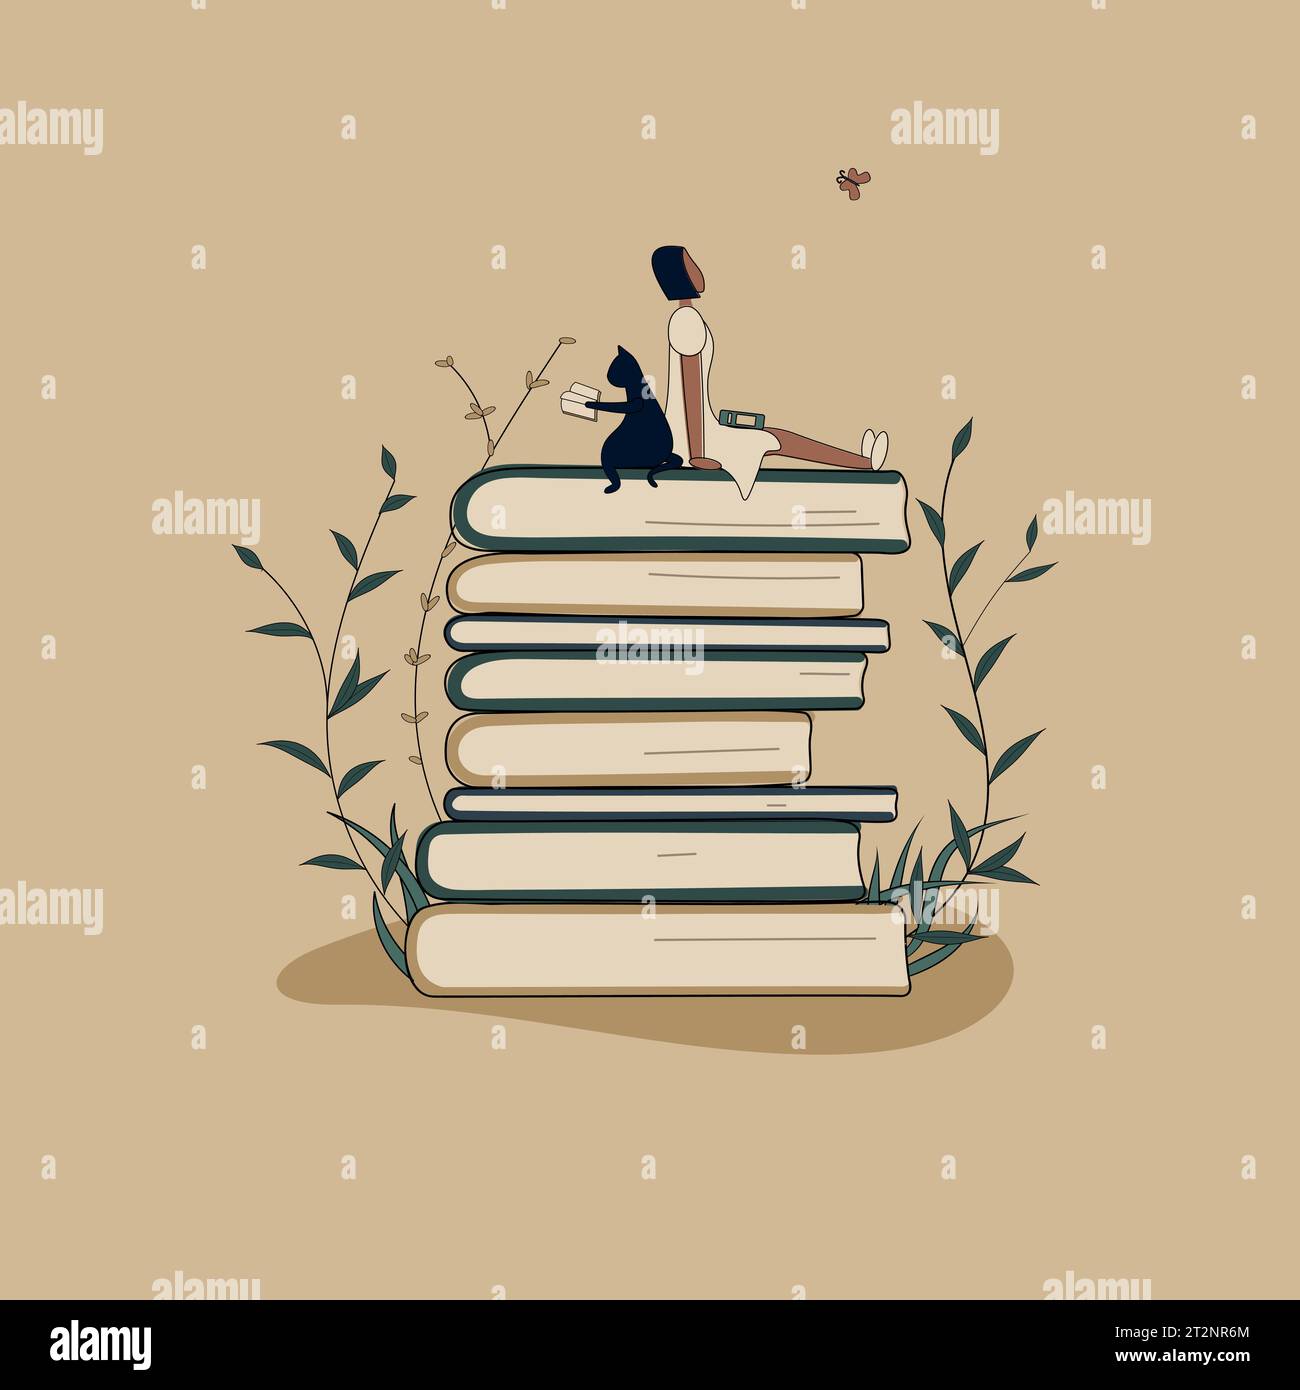 Konzept: Buch ist Quelle des Wissens. Eine kleine afrikanische Frau und Katze liest Buch, die auf einem Stapel von Büchern sitzen. Bände mit Pflanzen als Symbol der Bildung Stock Vektor